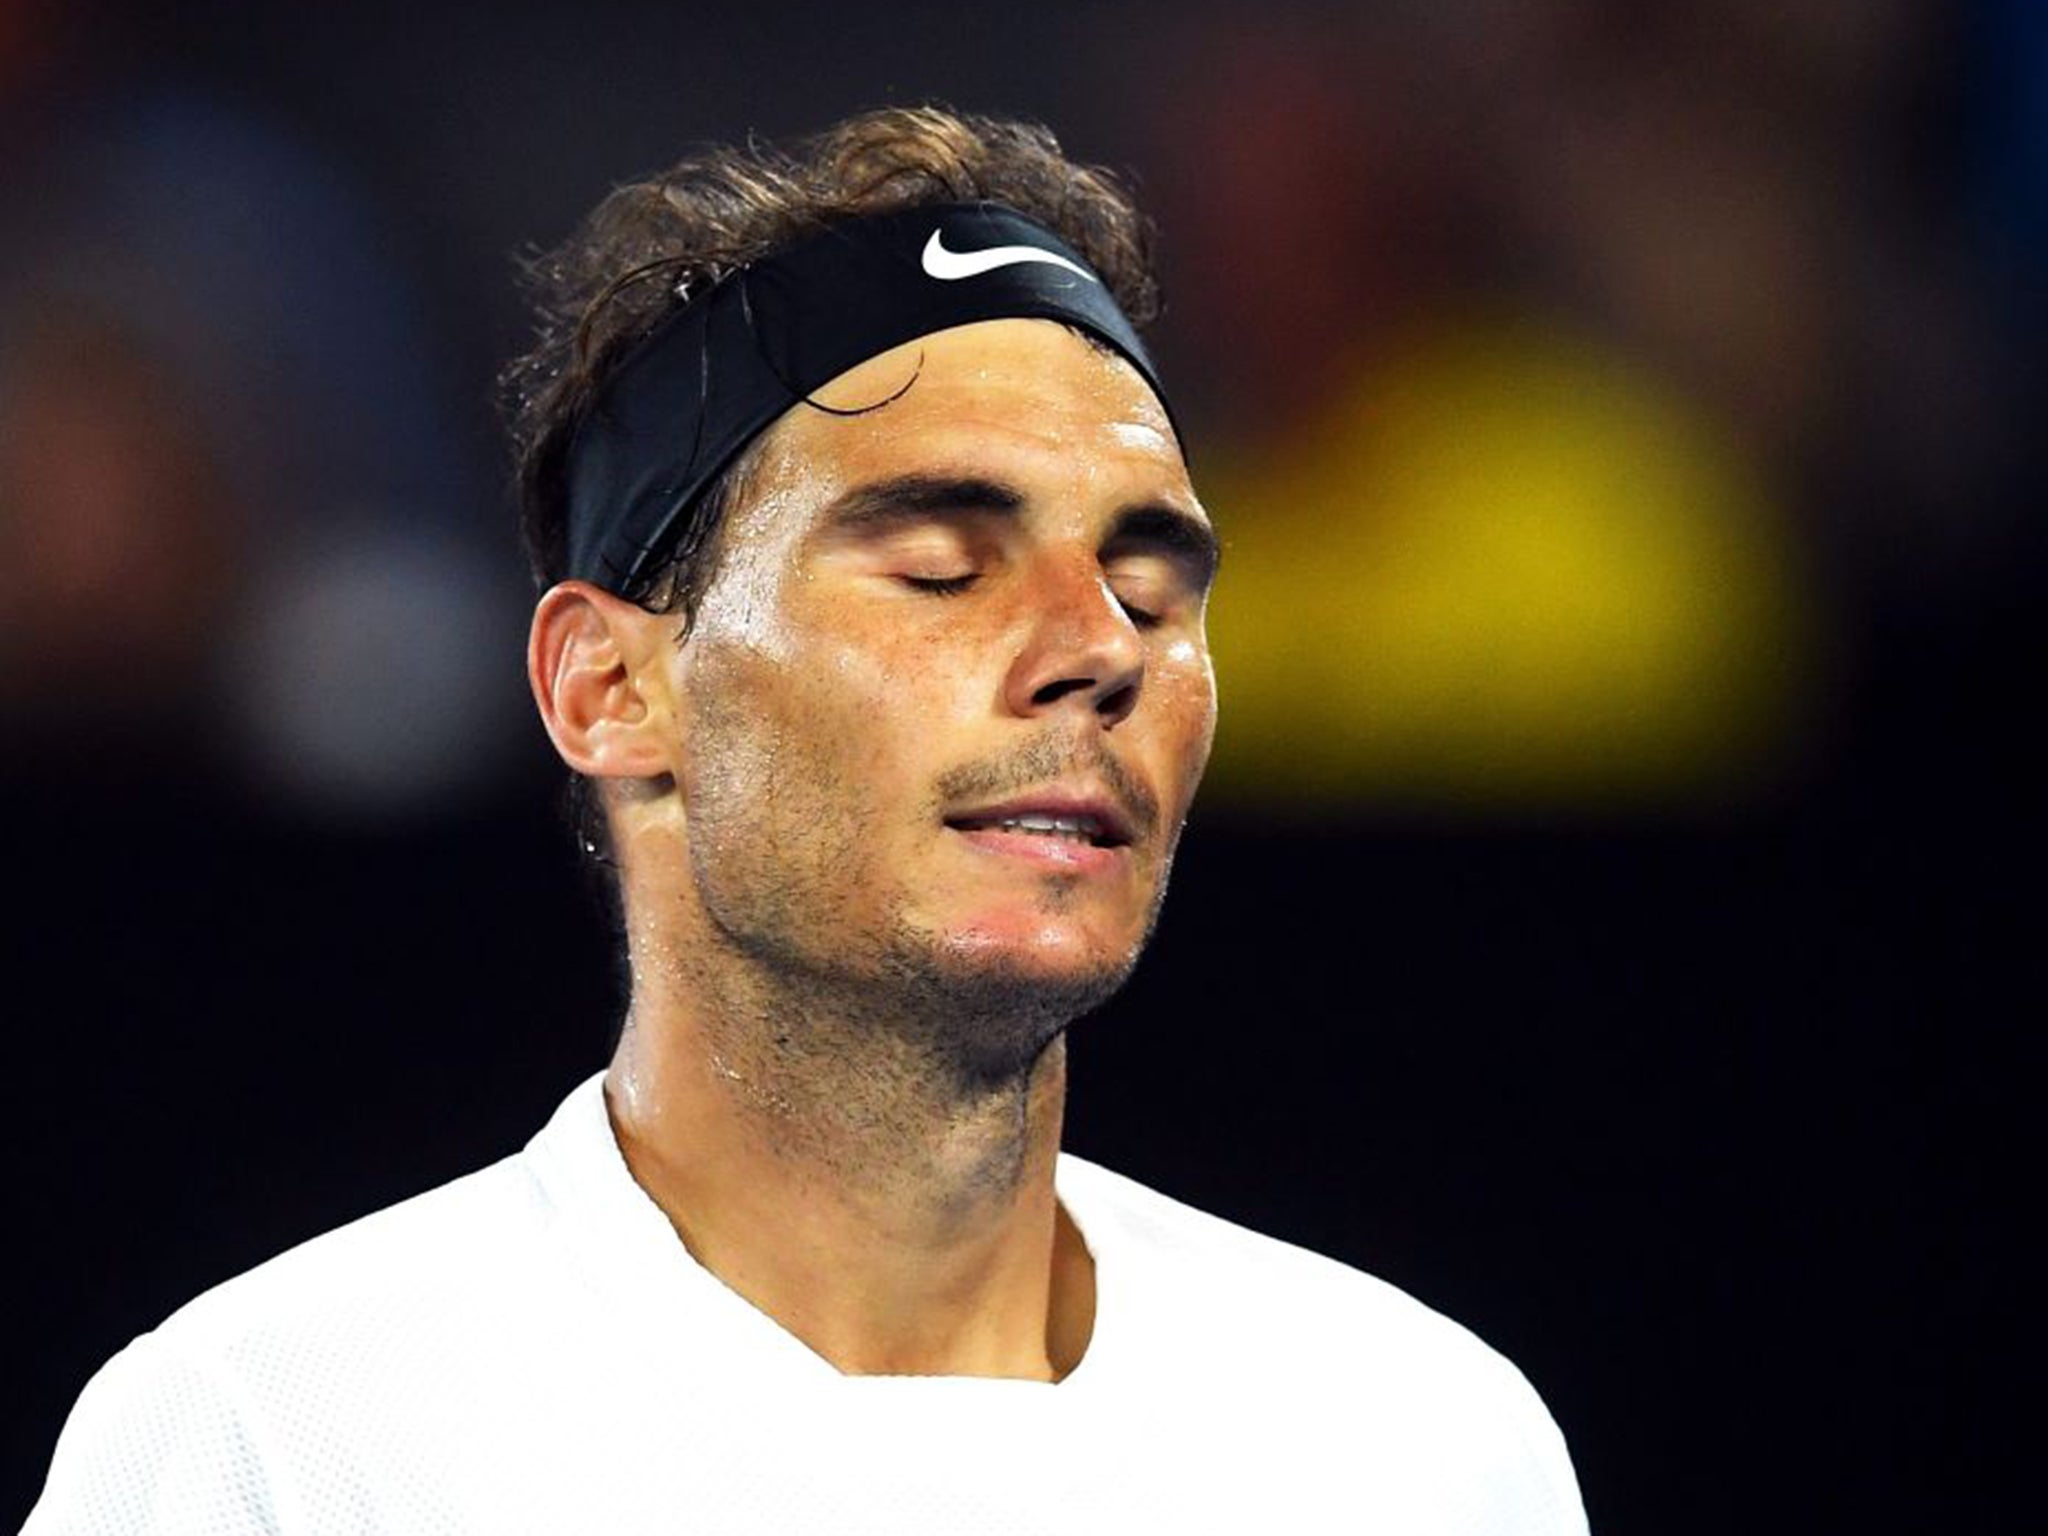 Roger Federer - Wikipedia